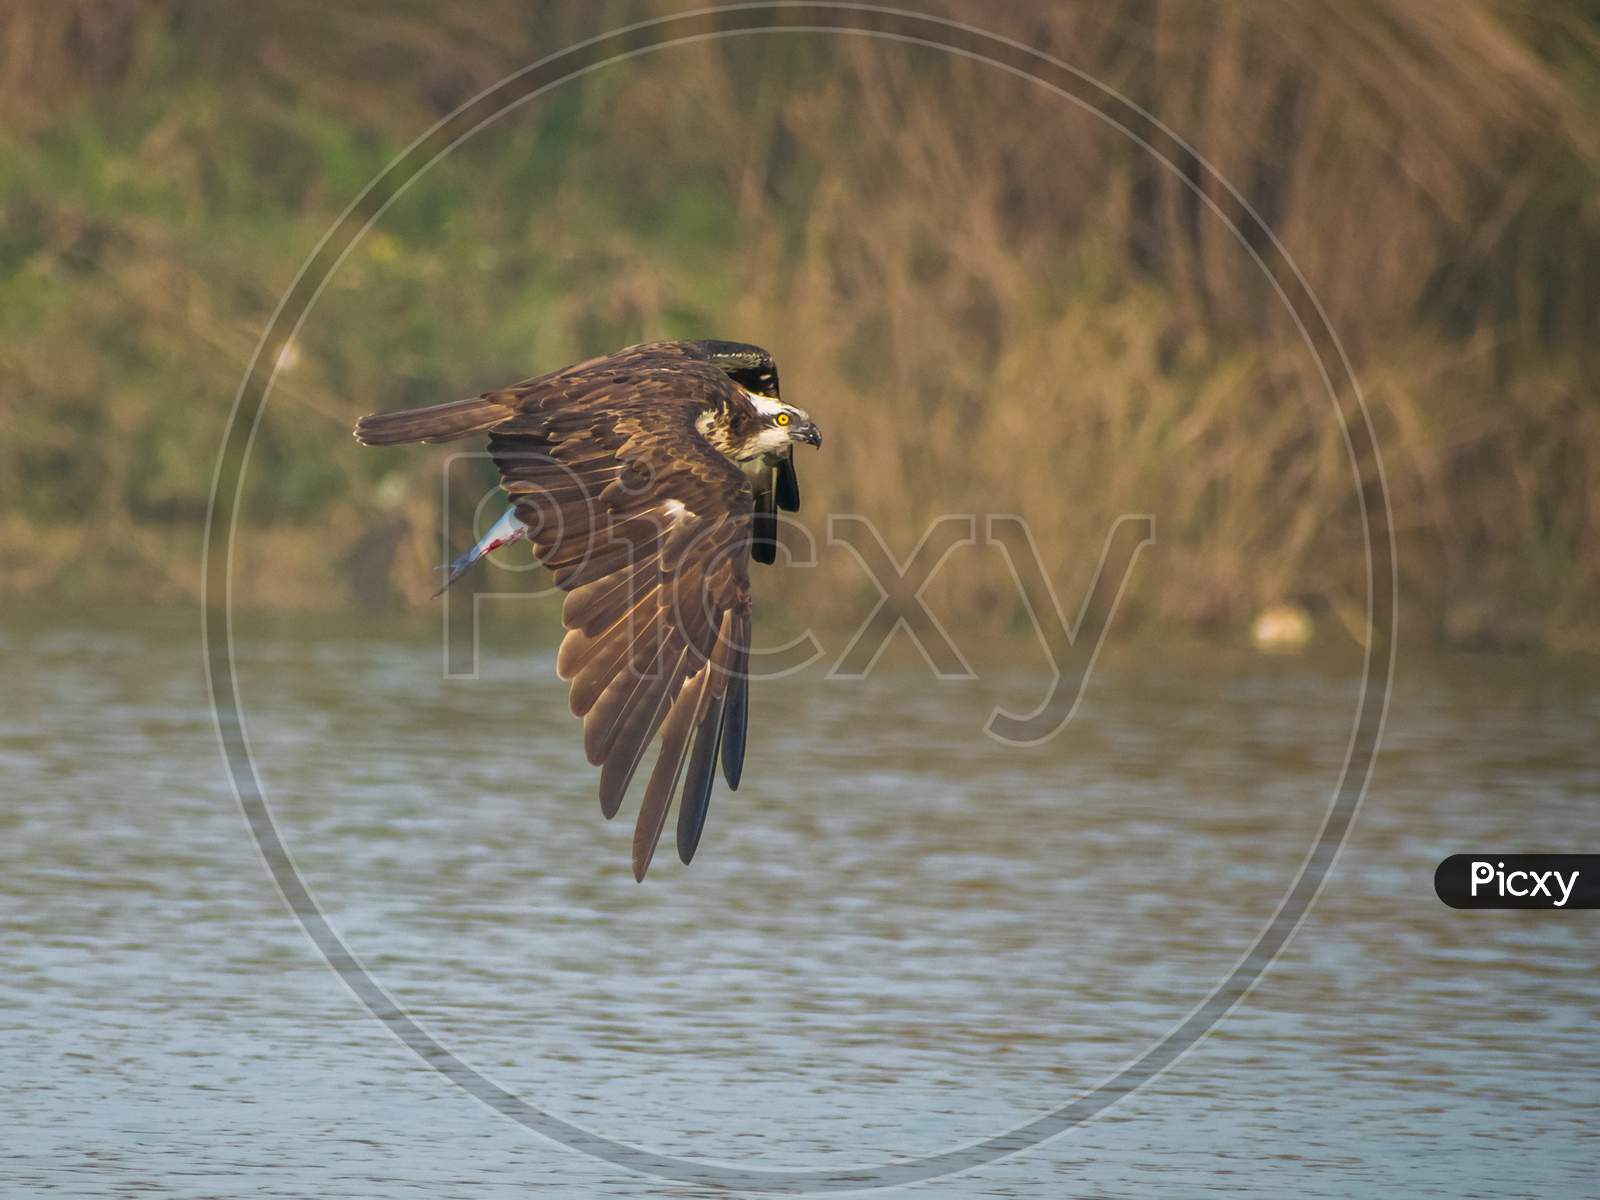 An Osprey with catch